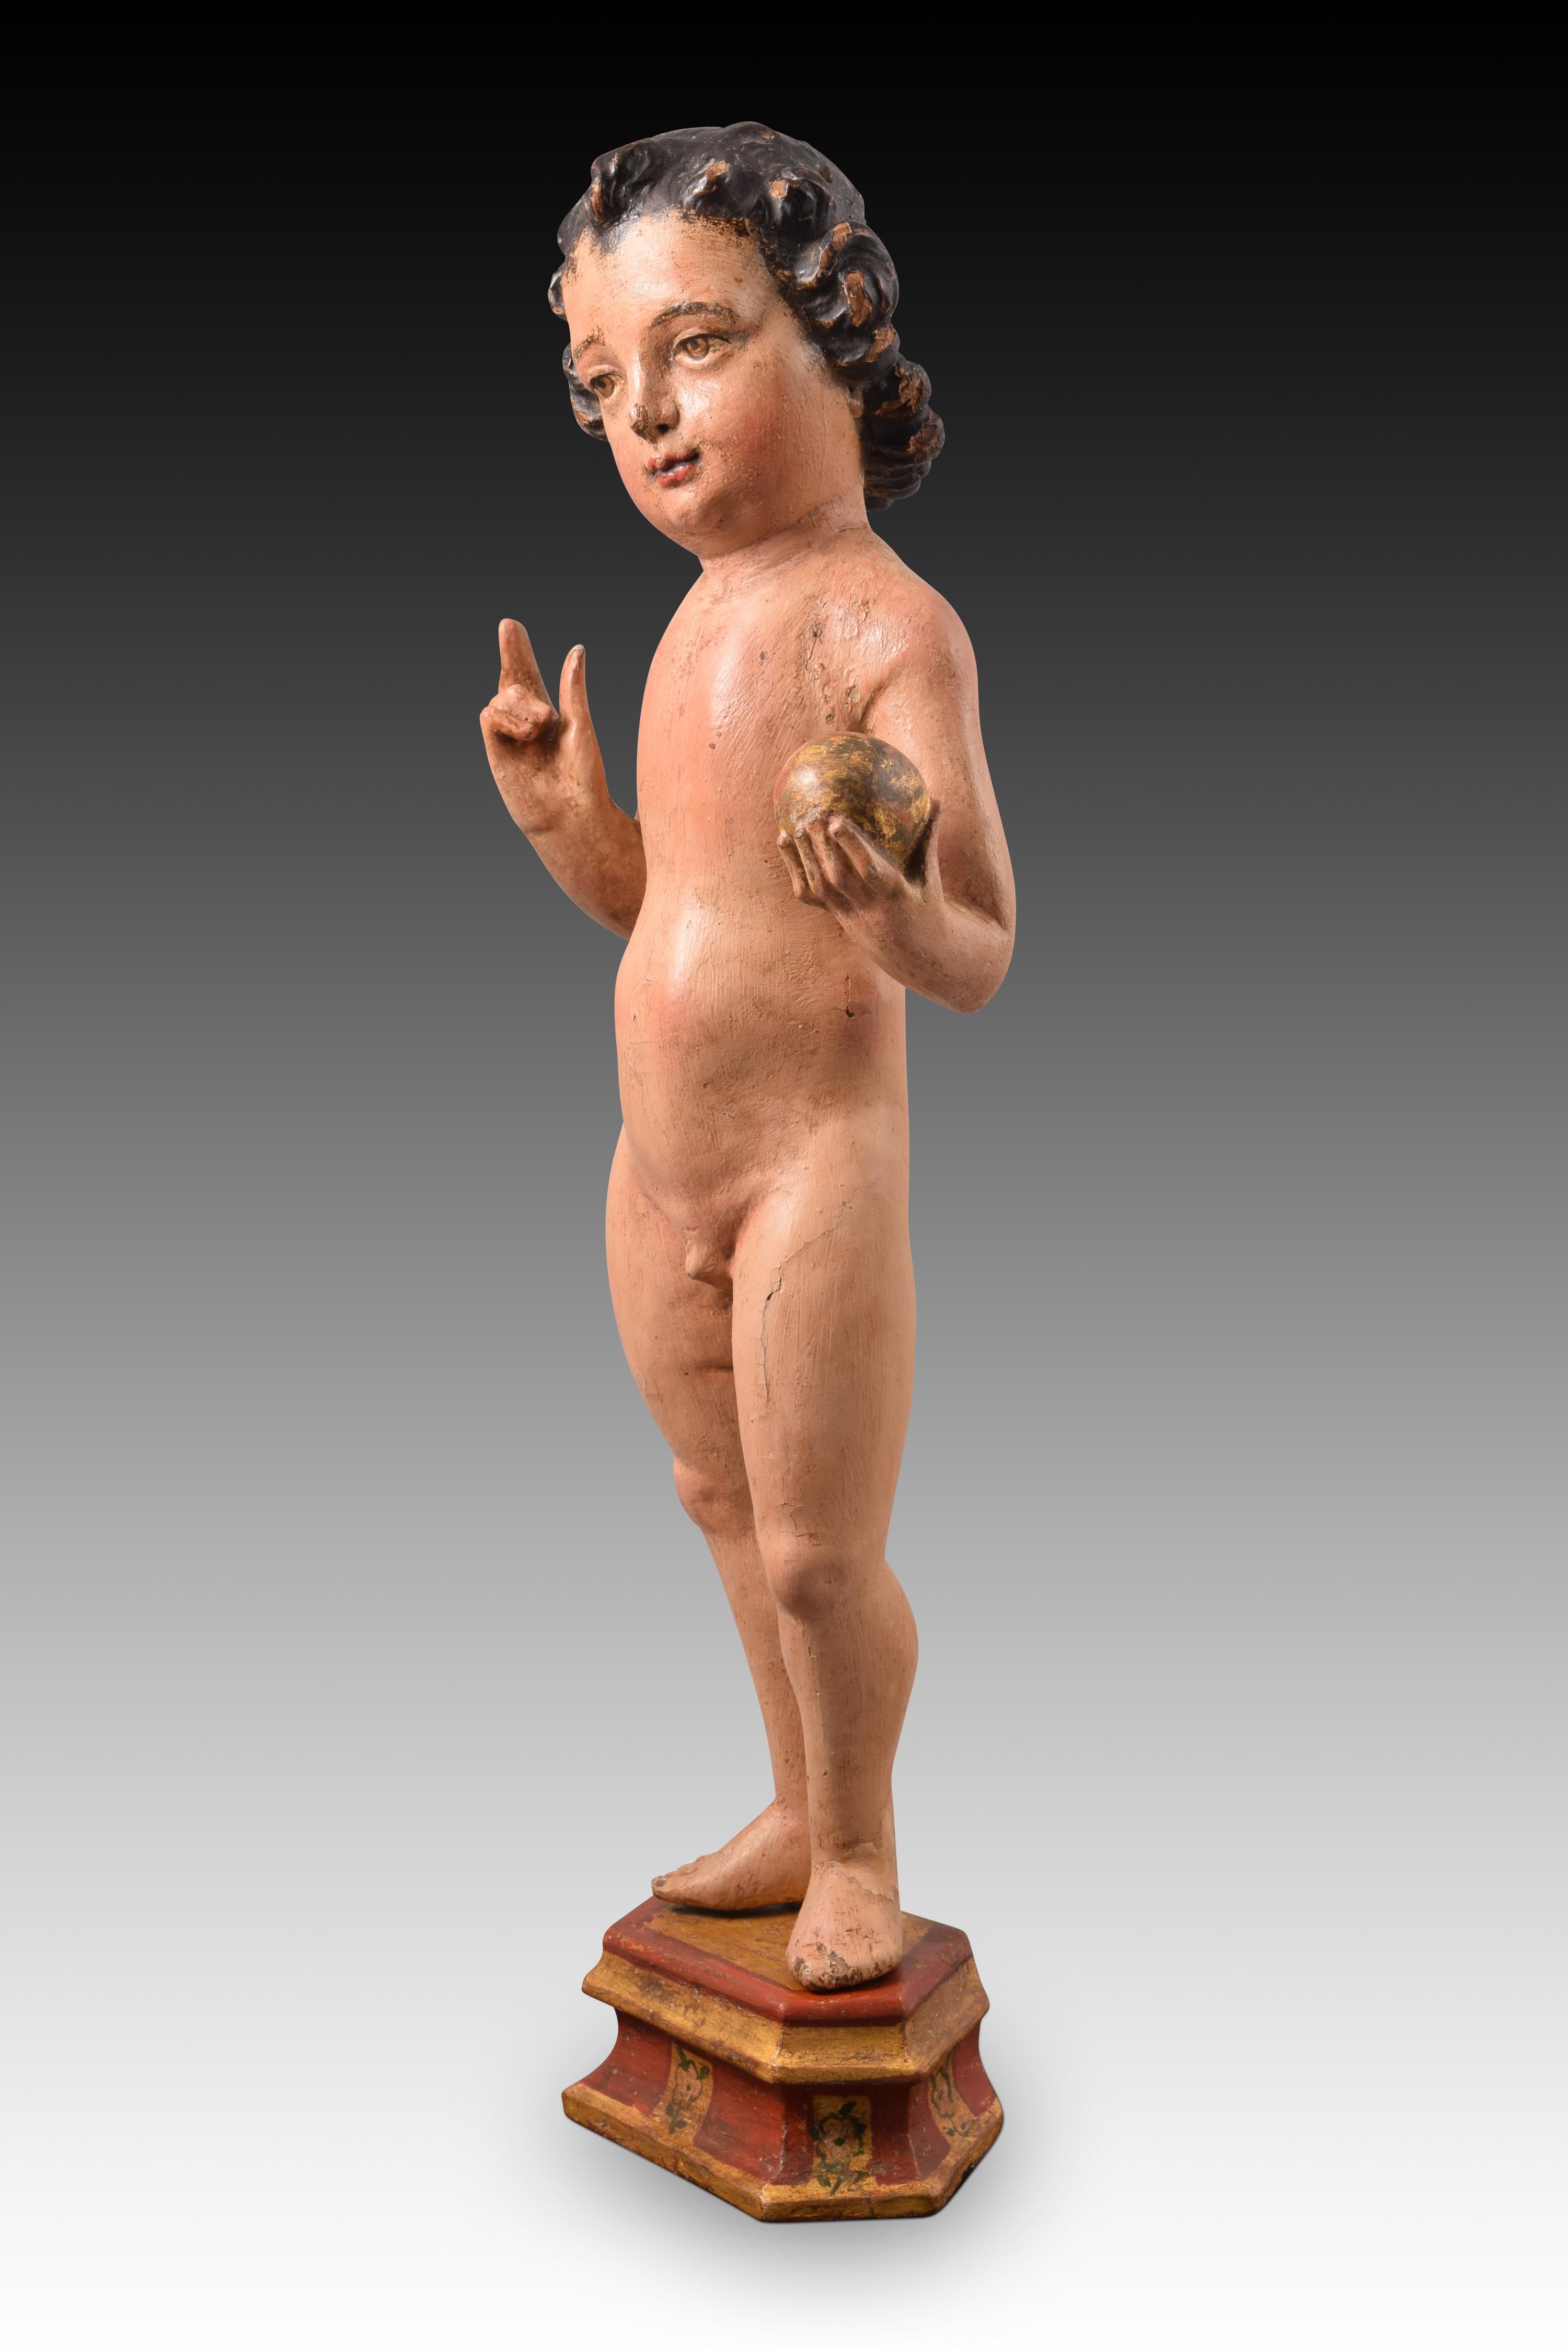 Child & Child. Bois sculpté et polychrome. Vers la première moitié du XVIe siècle. Adaptations ultérieures, probablement au 18e siècle
 Enfant Jésus avec base polygonale en bois sculpté et polychrome. Le personnage est présenté nu, debout, la main